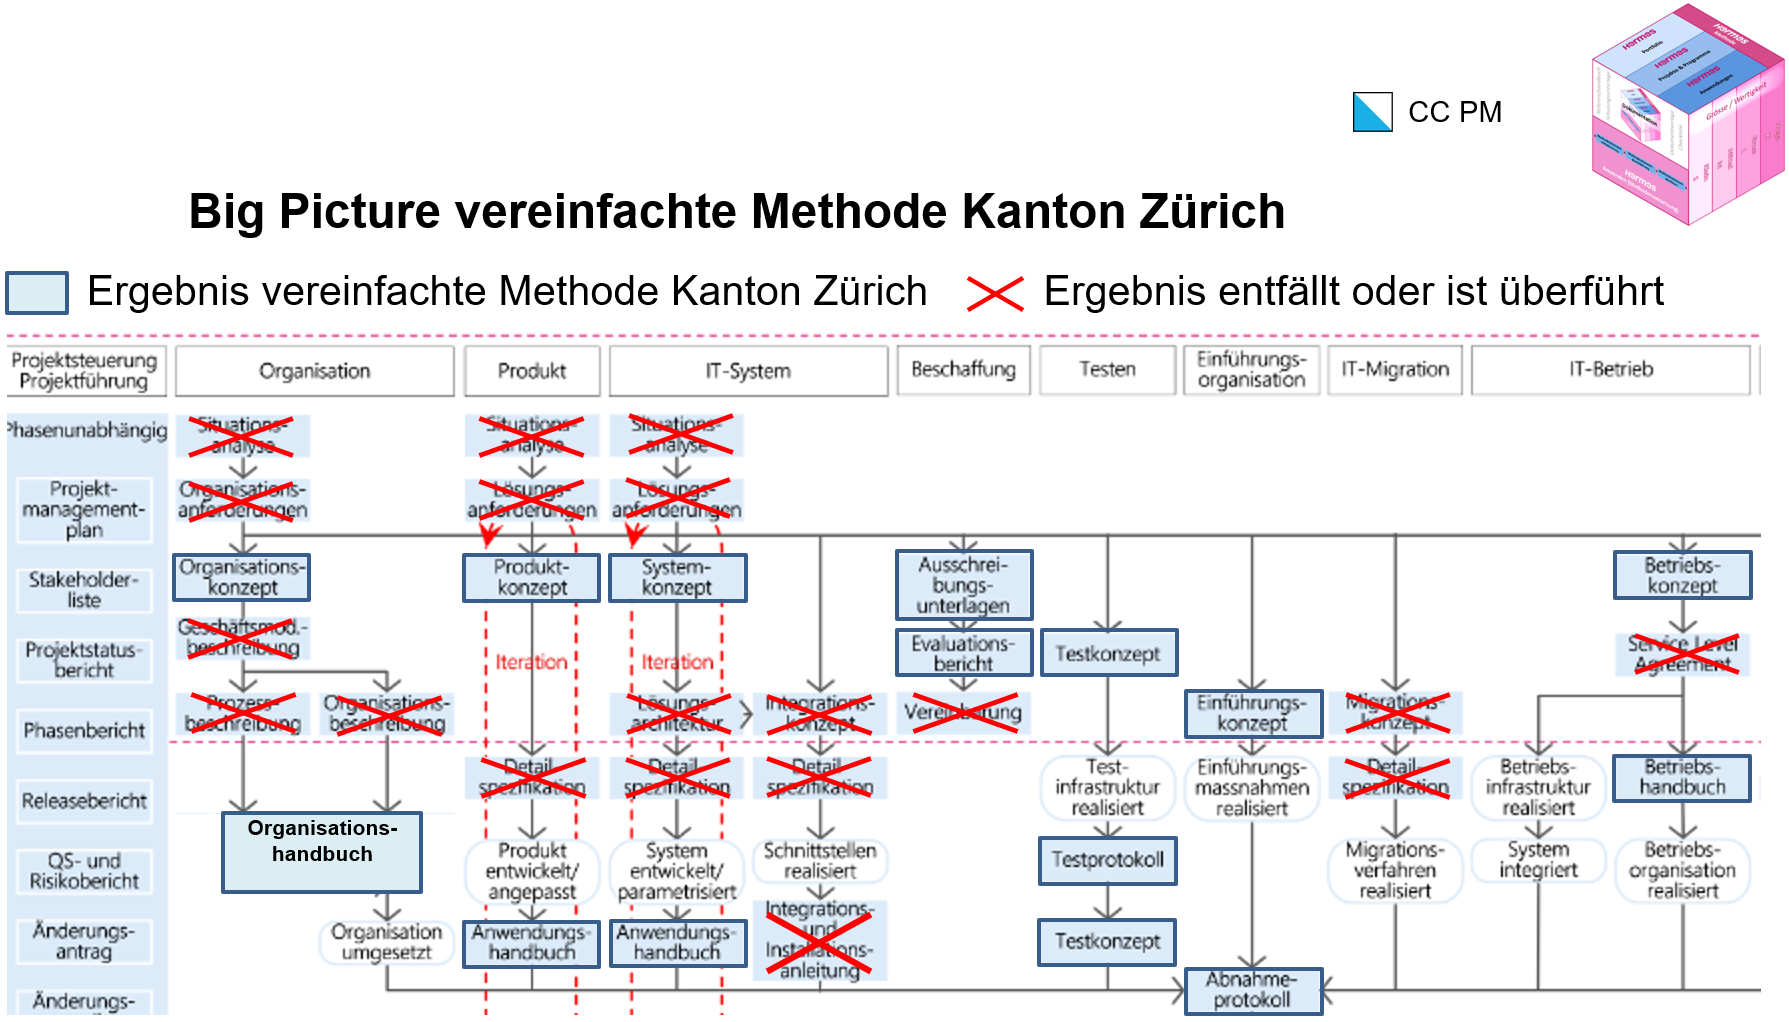 Abbildung: Big Picture vereinfachte Methode Kanton Zürich